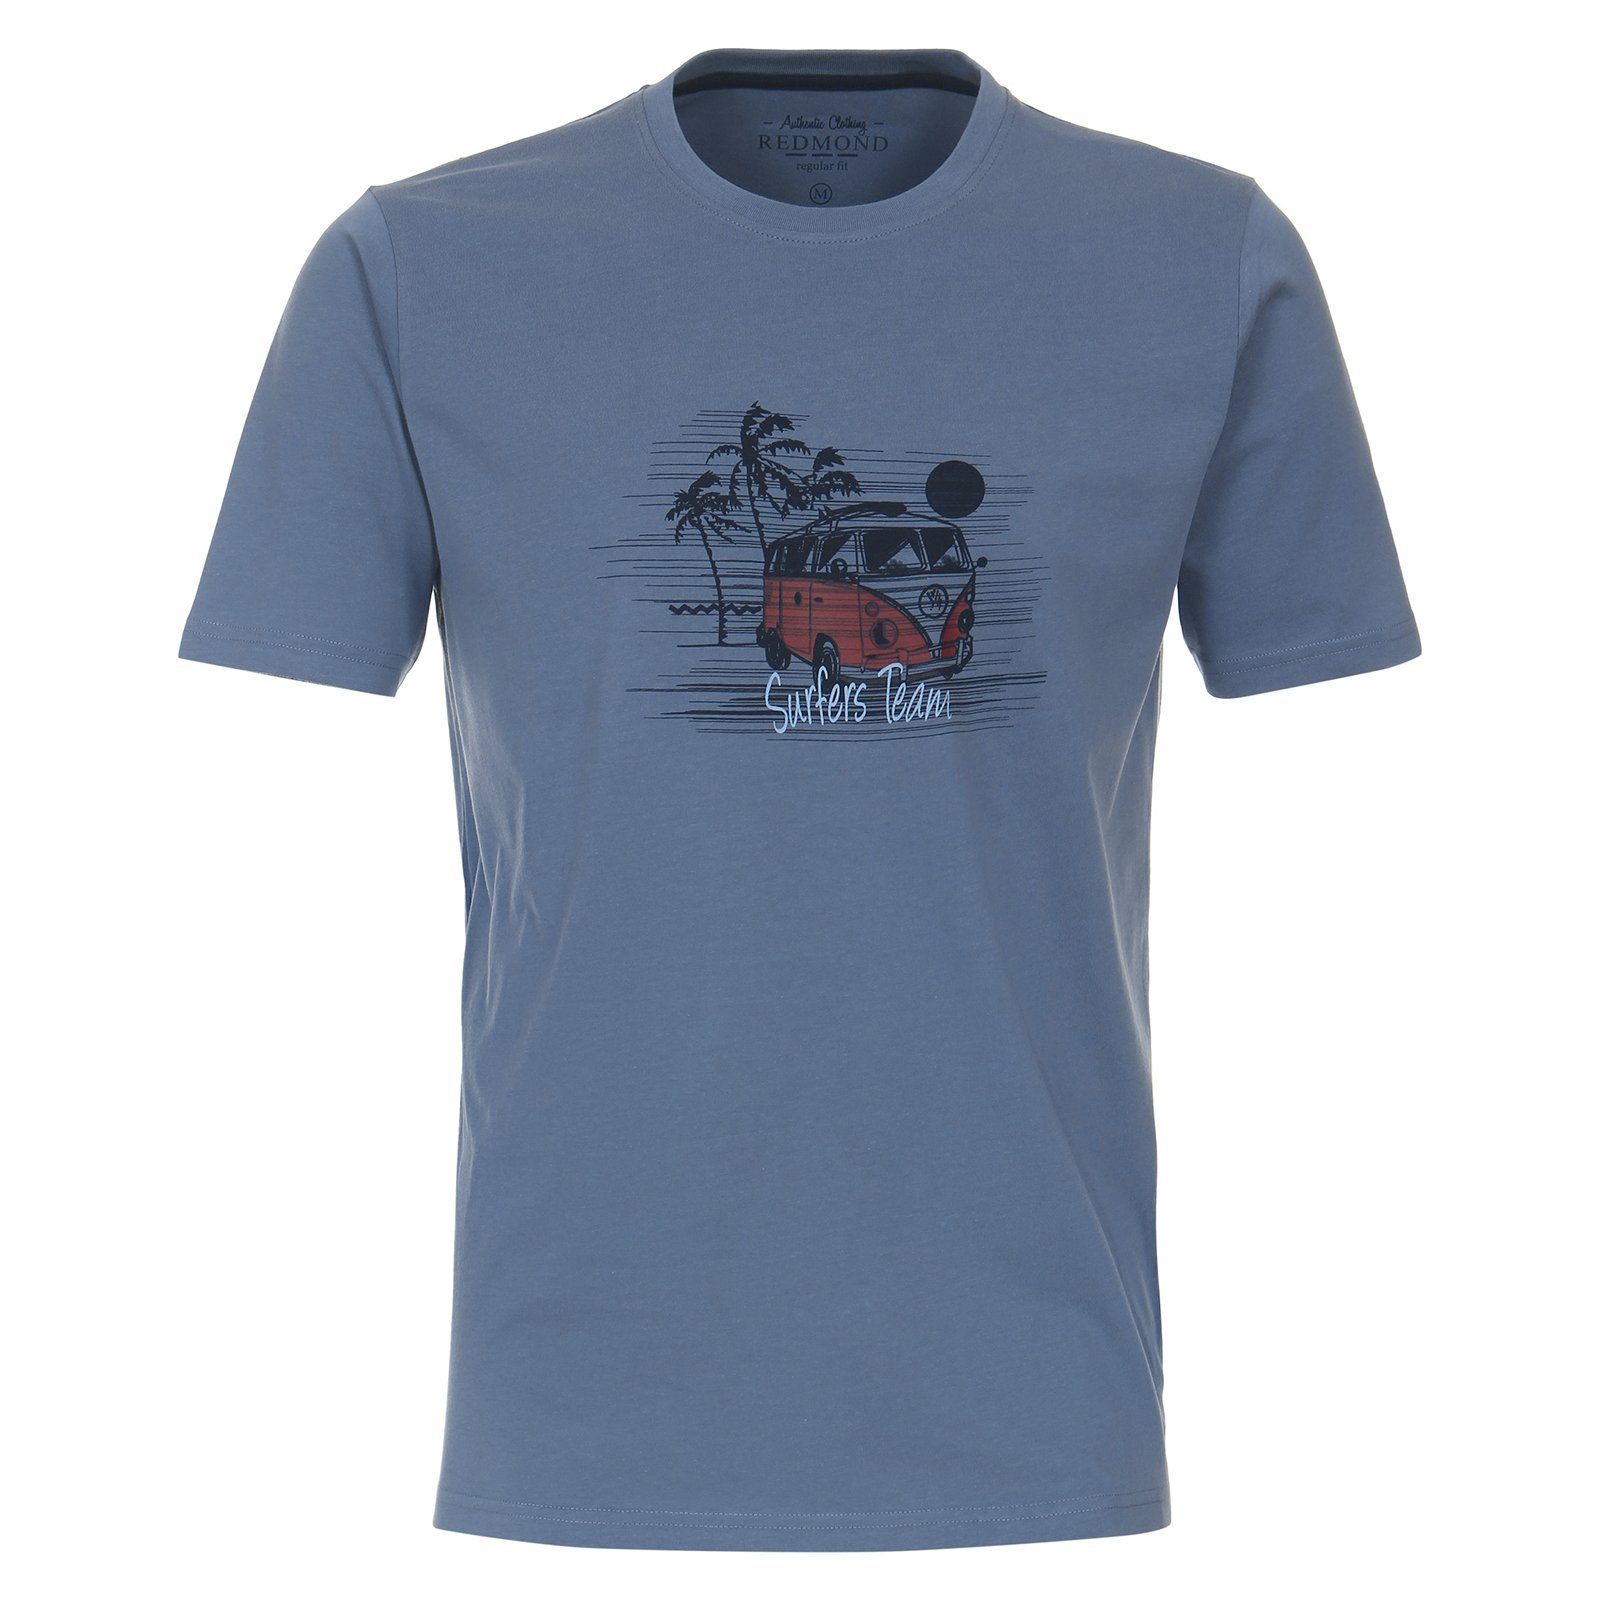 Redmond Rundhalsshirt Große Größen denimblau Redmond modischer Herren Print T-Shirt